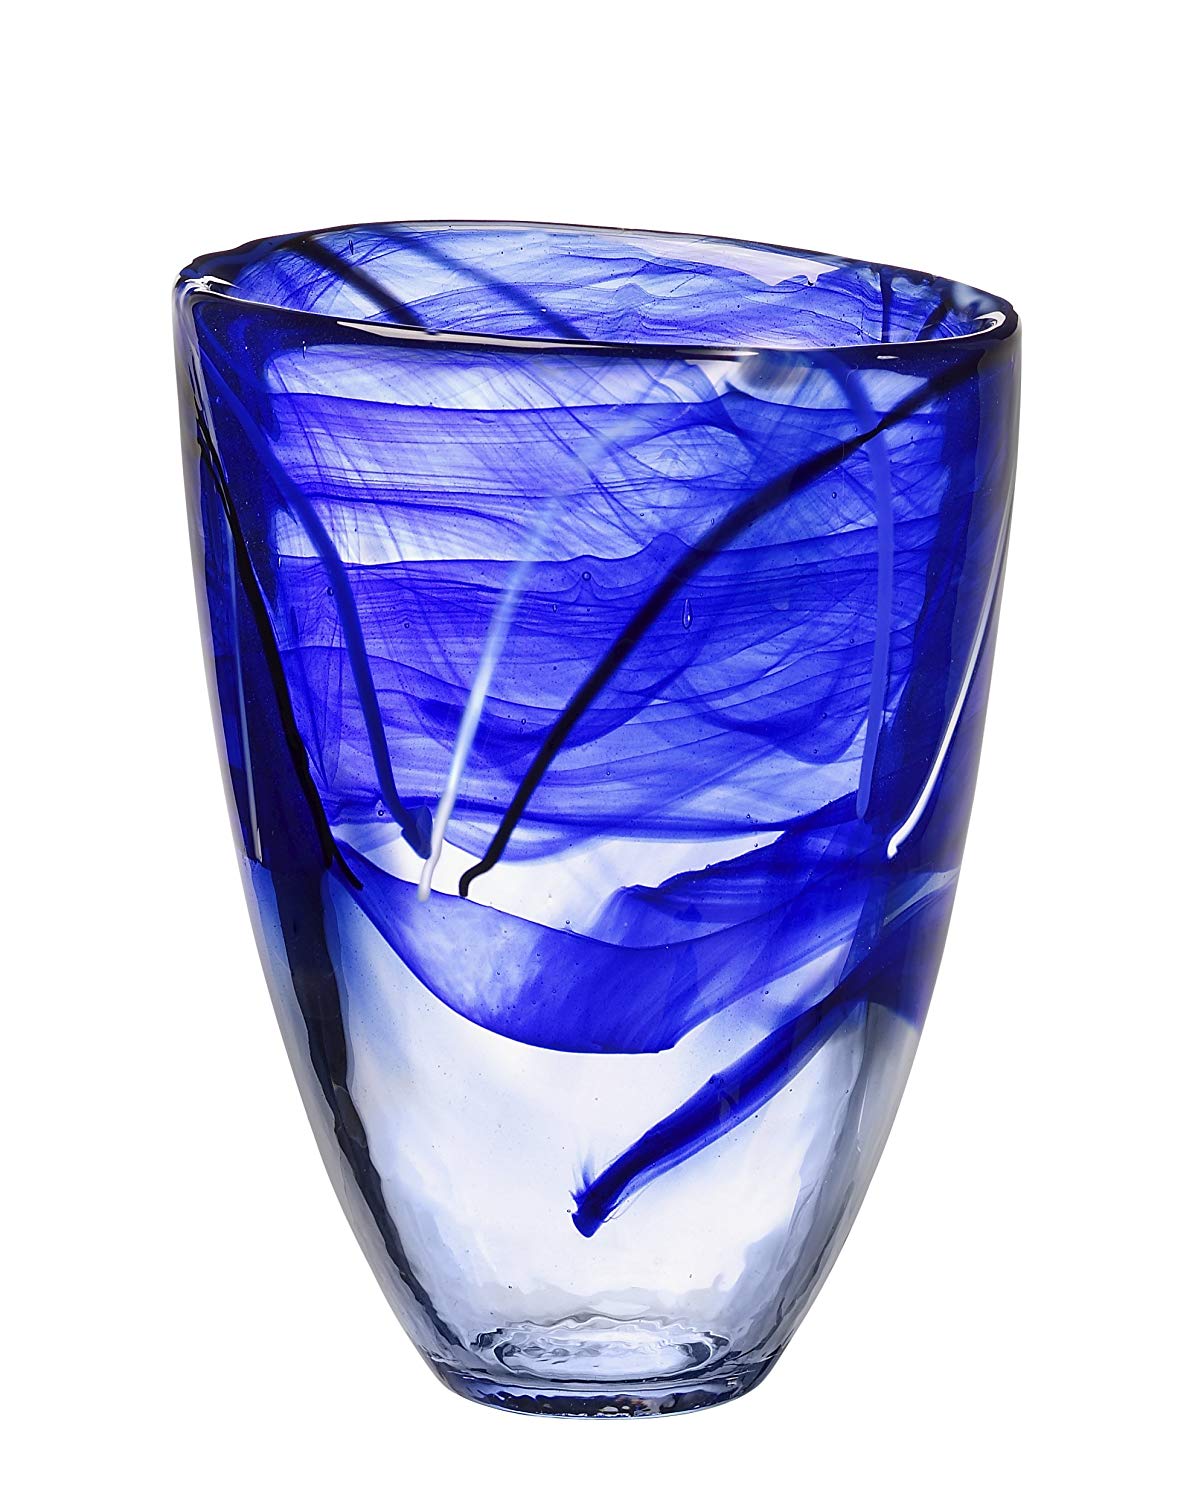 Kosta Boda Contrast Vase Blue